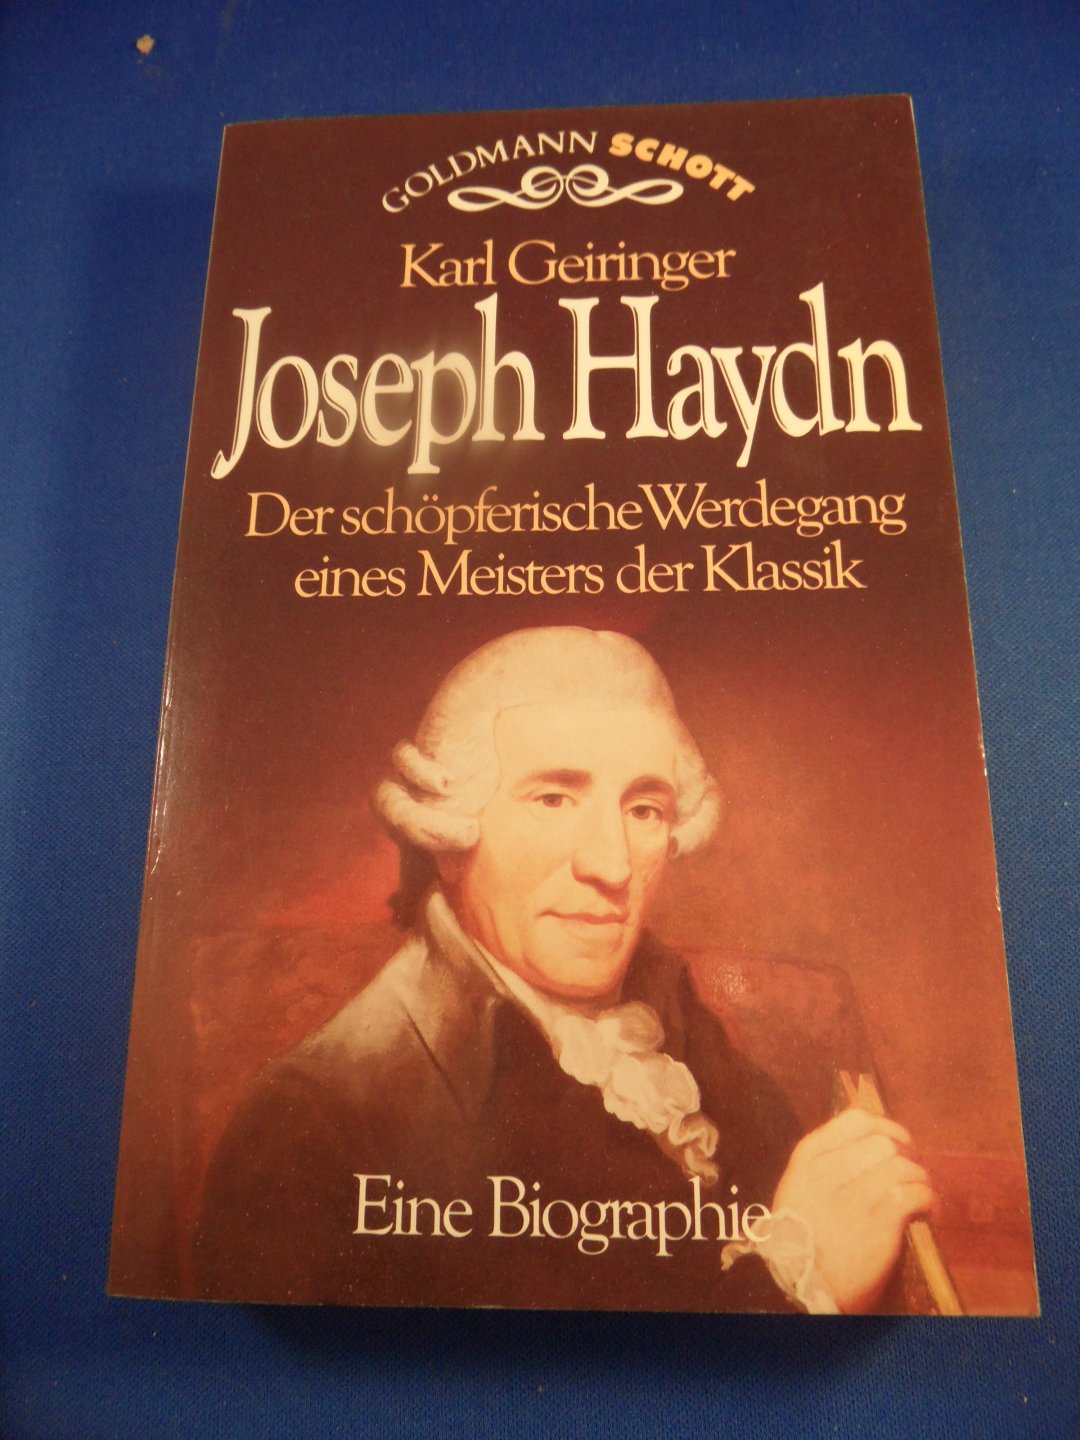 Geiringer, Karl - Joseph haydn, der schopferische Werdegang eines Meisters der Klassik